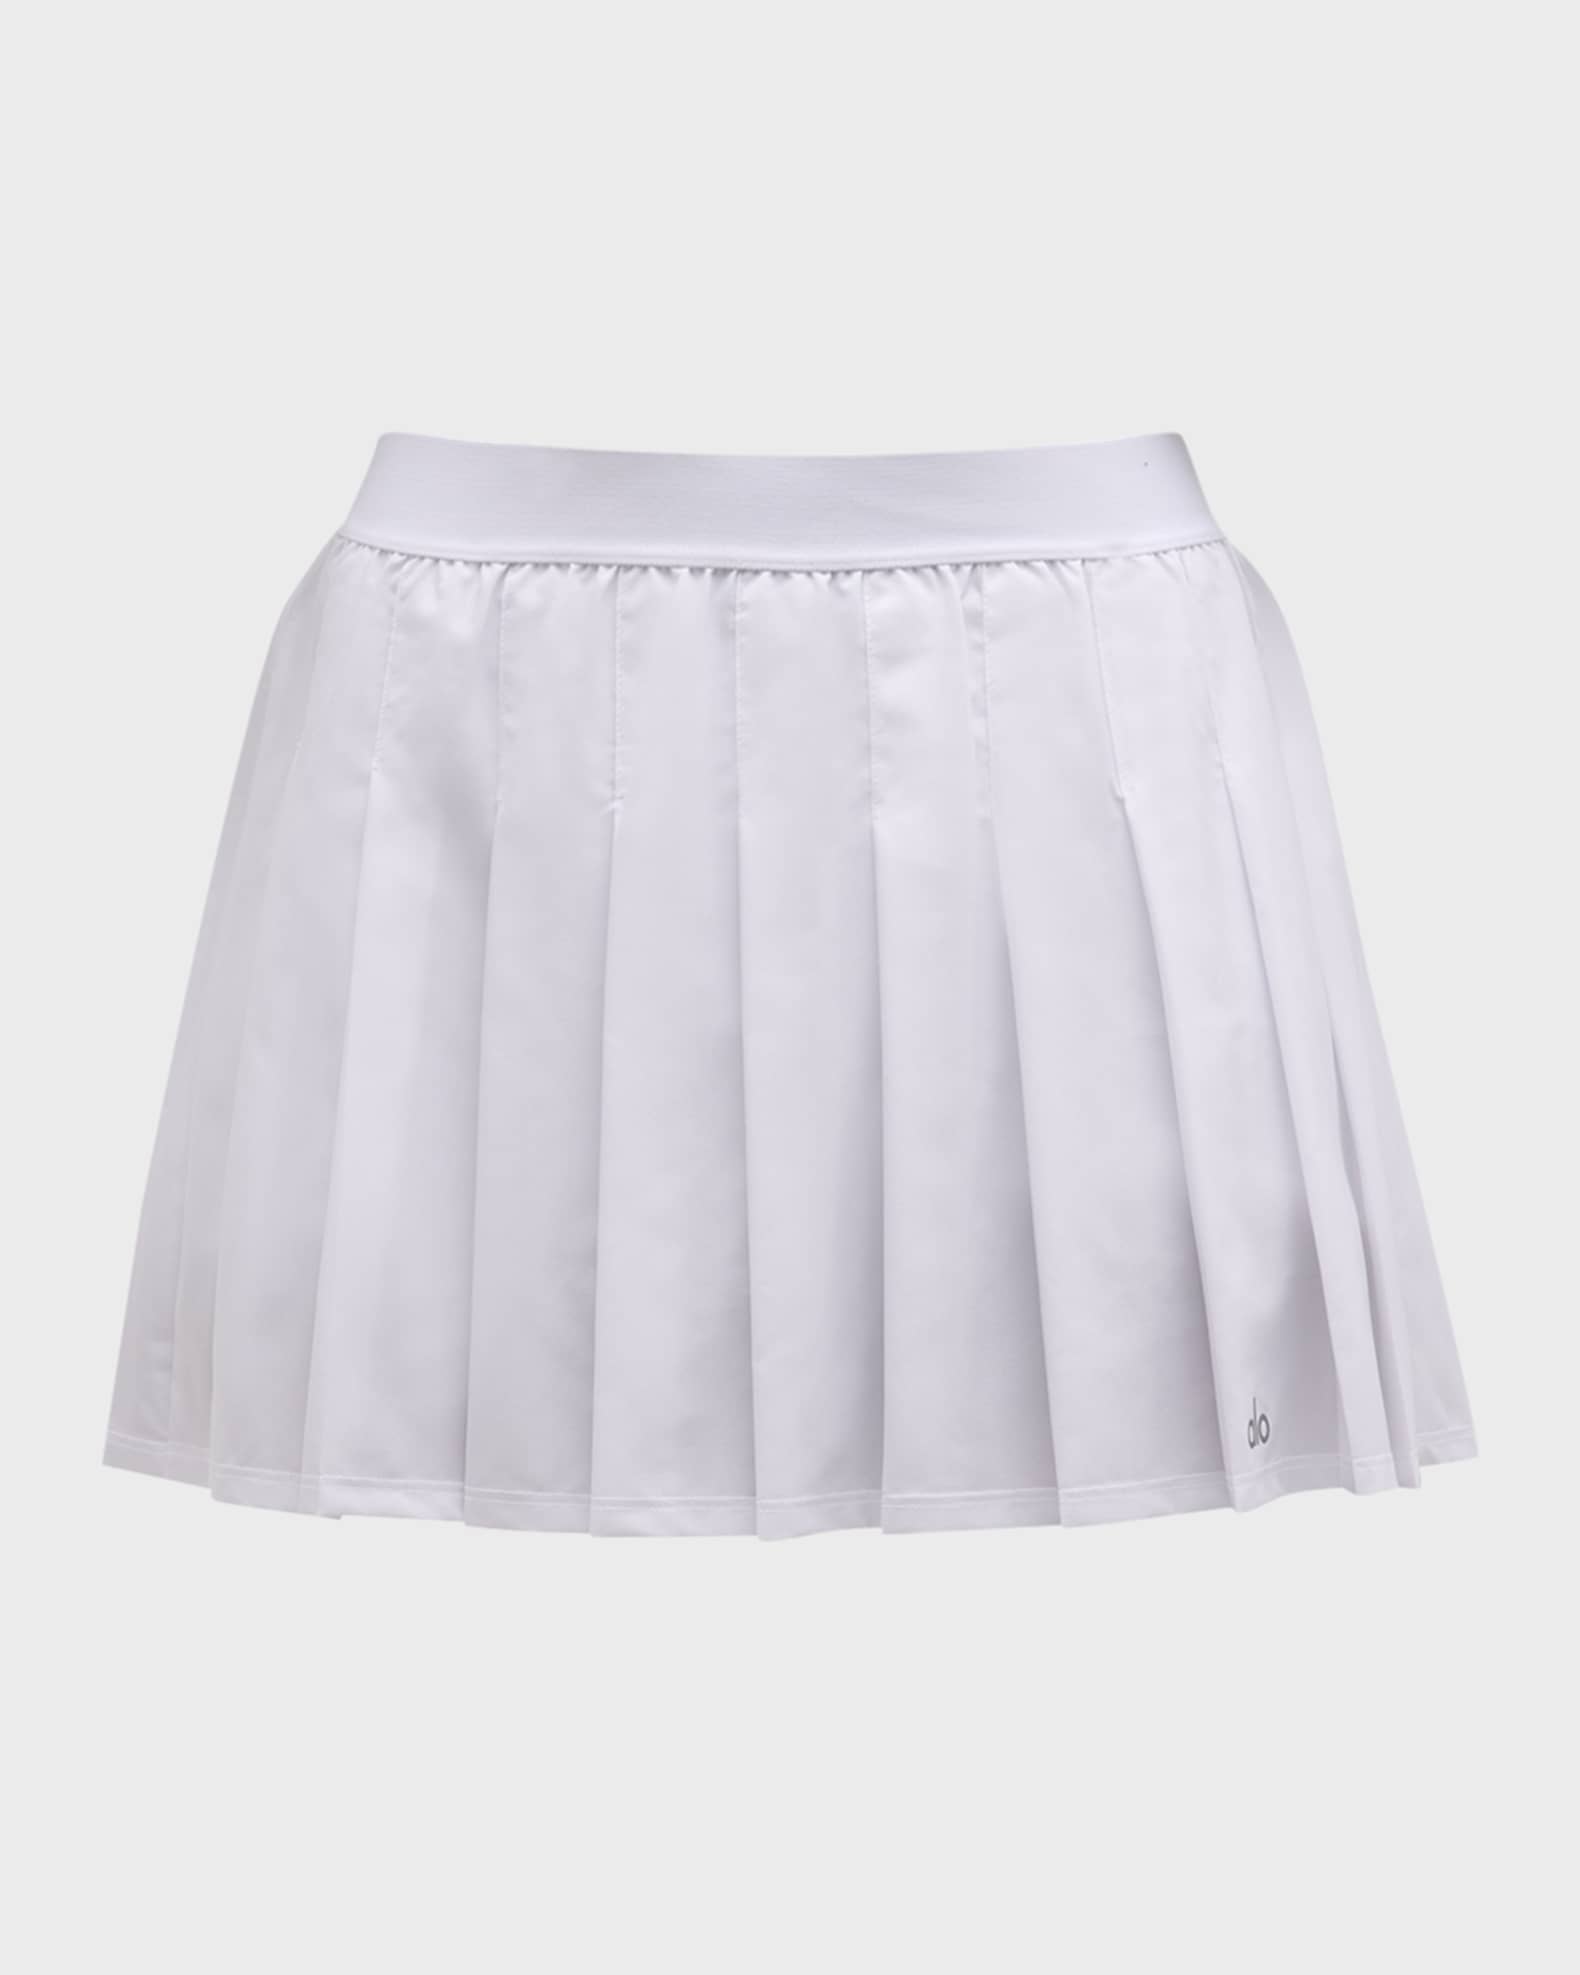 Alo Yoga® Micro Plisse Tennis Skirt Shorts - White